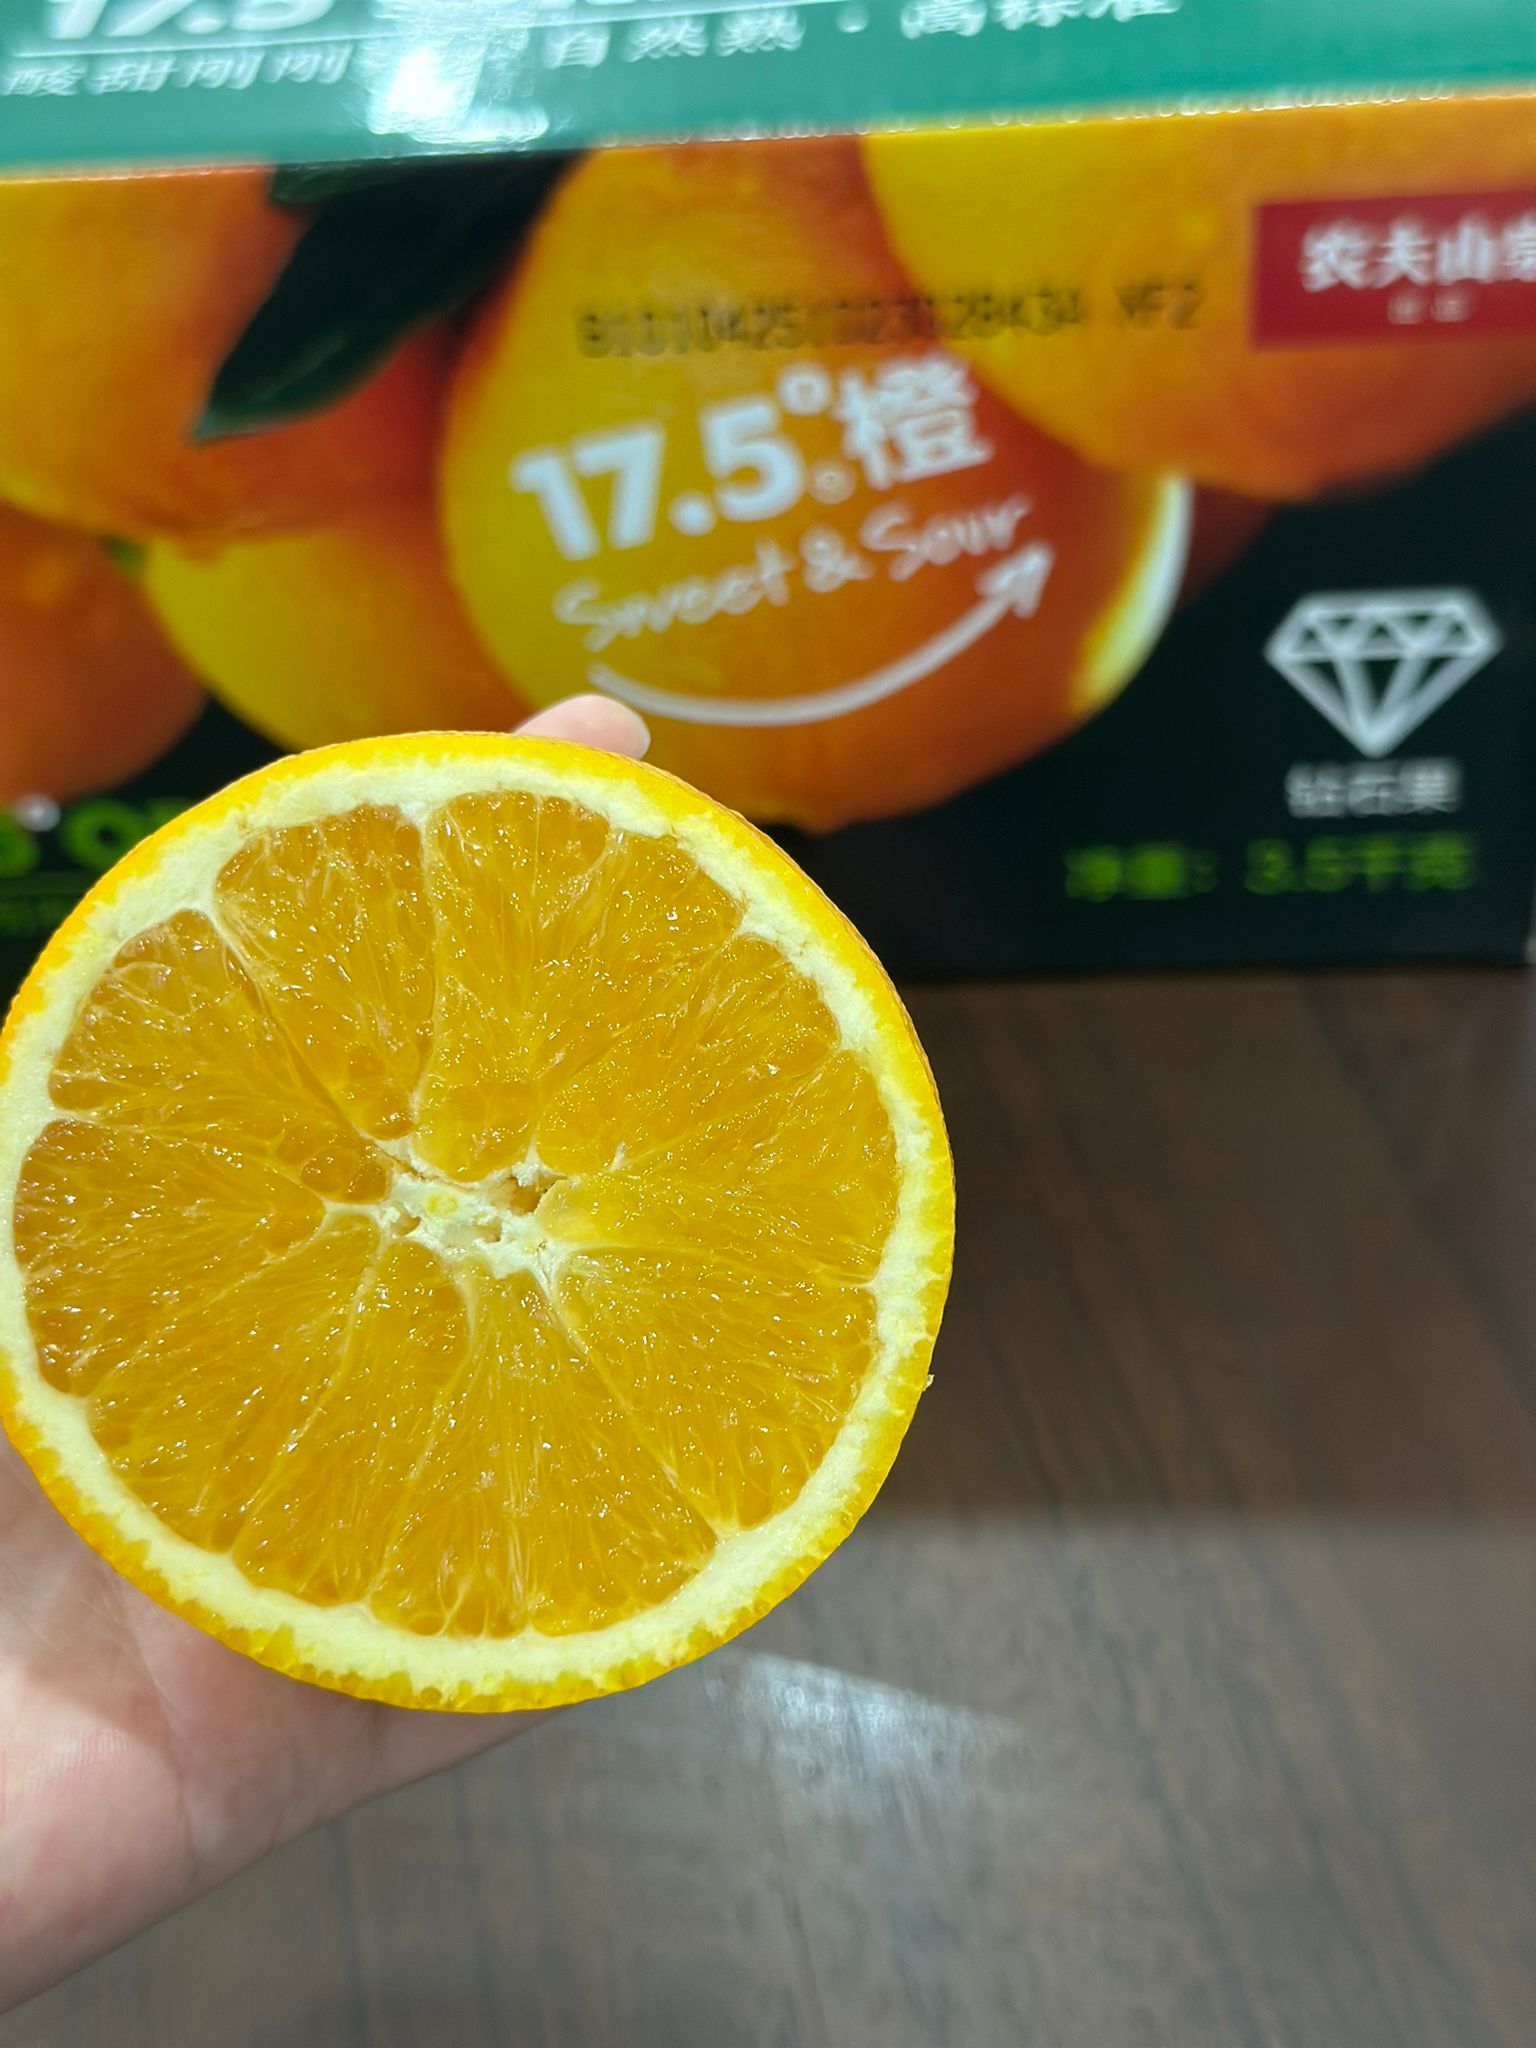 Nongfu Spring 17.5 Diamond Series Orange “Offer” 农夫山泉17.5度橙 